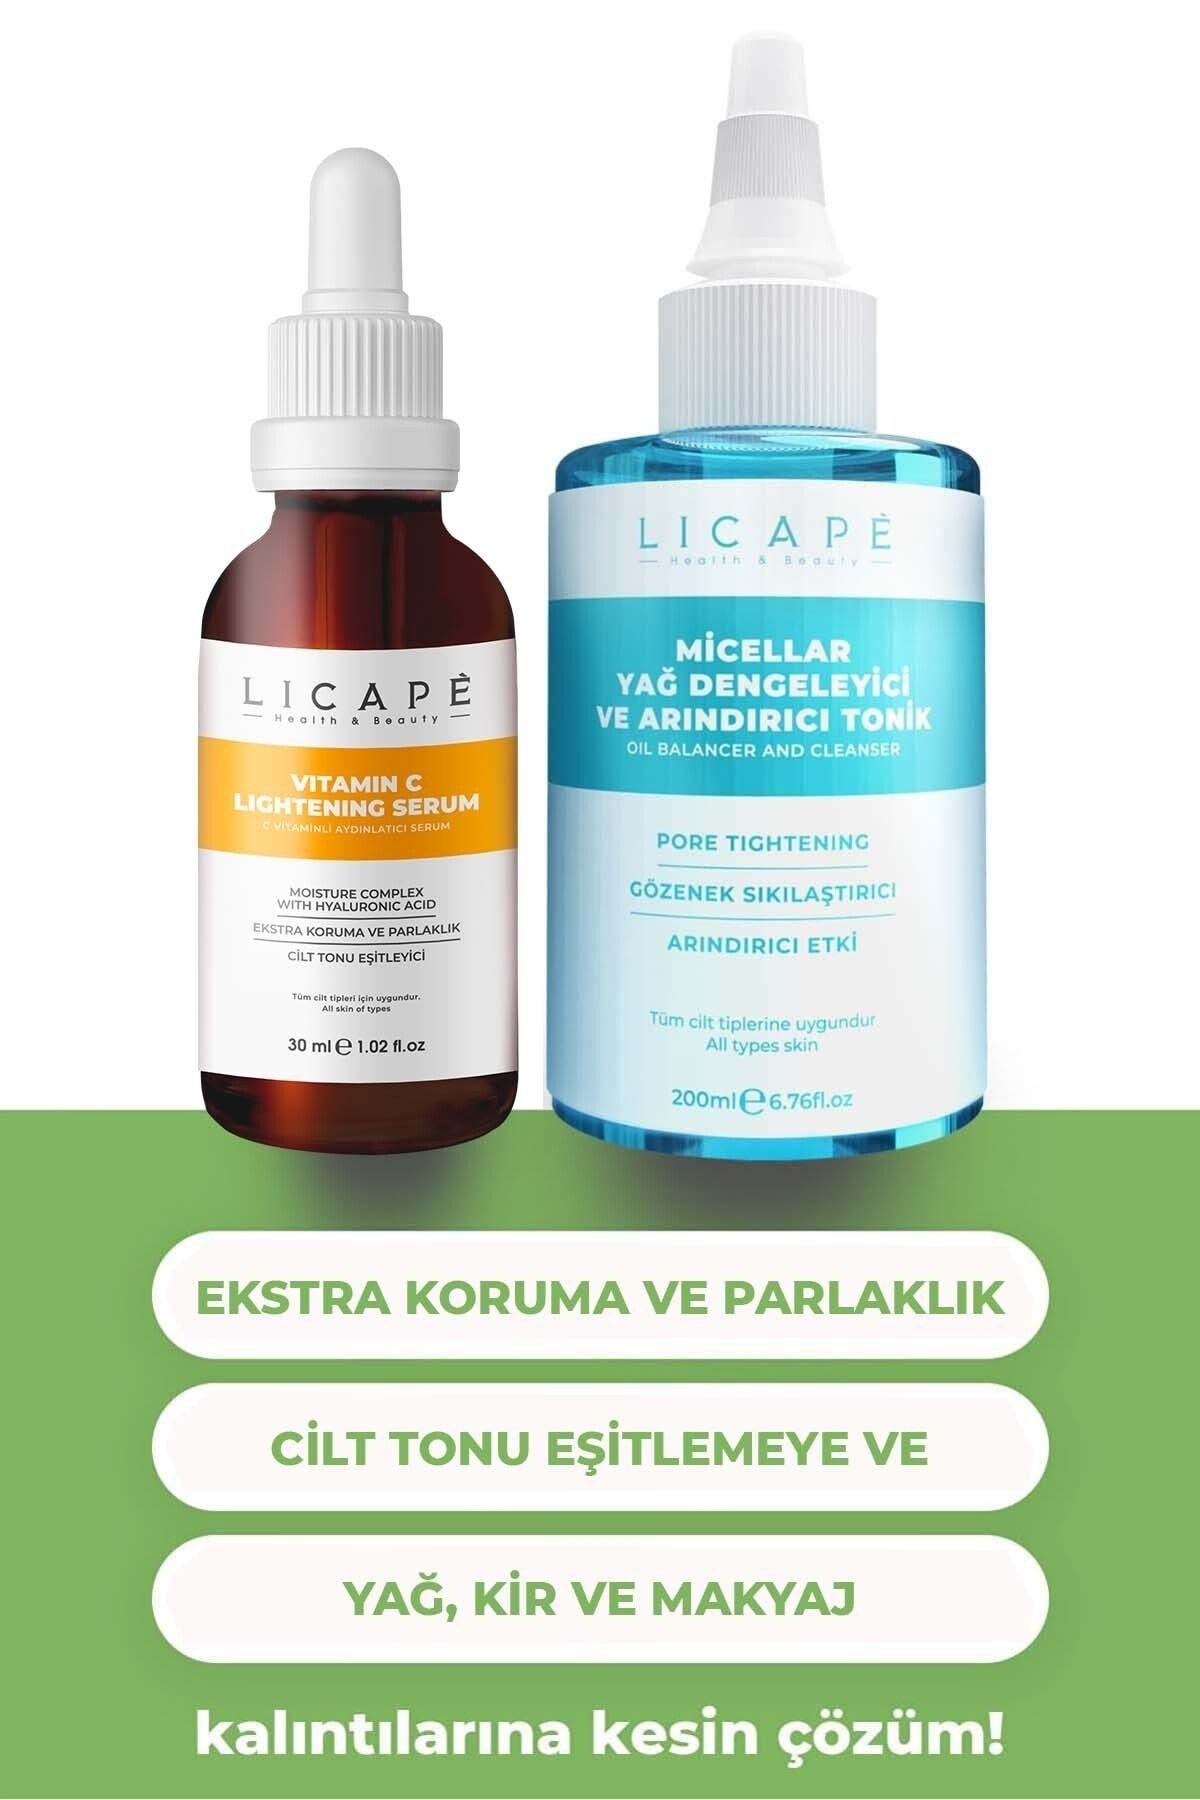 Licape C Vitaminli Aydınlatıcı Serum Gözenek Sıkılaştırıcı Ve Arındırıcı Tonik 200ml